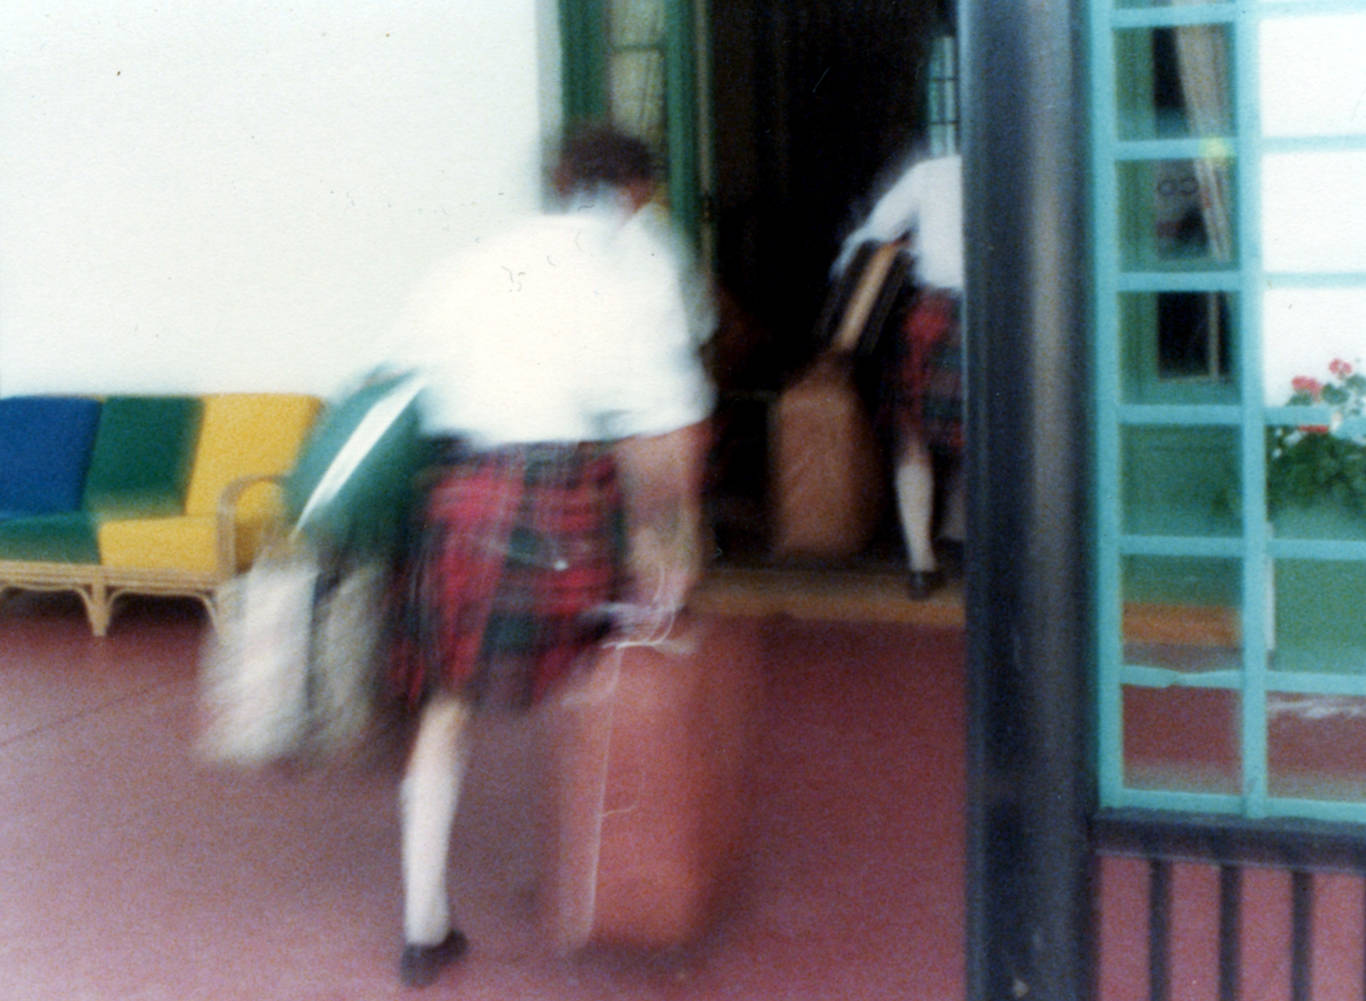 Blurry Luggage - frame 2